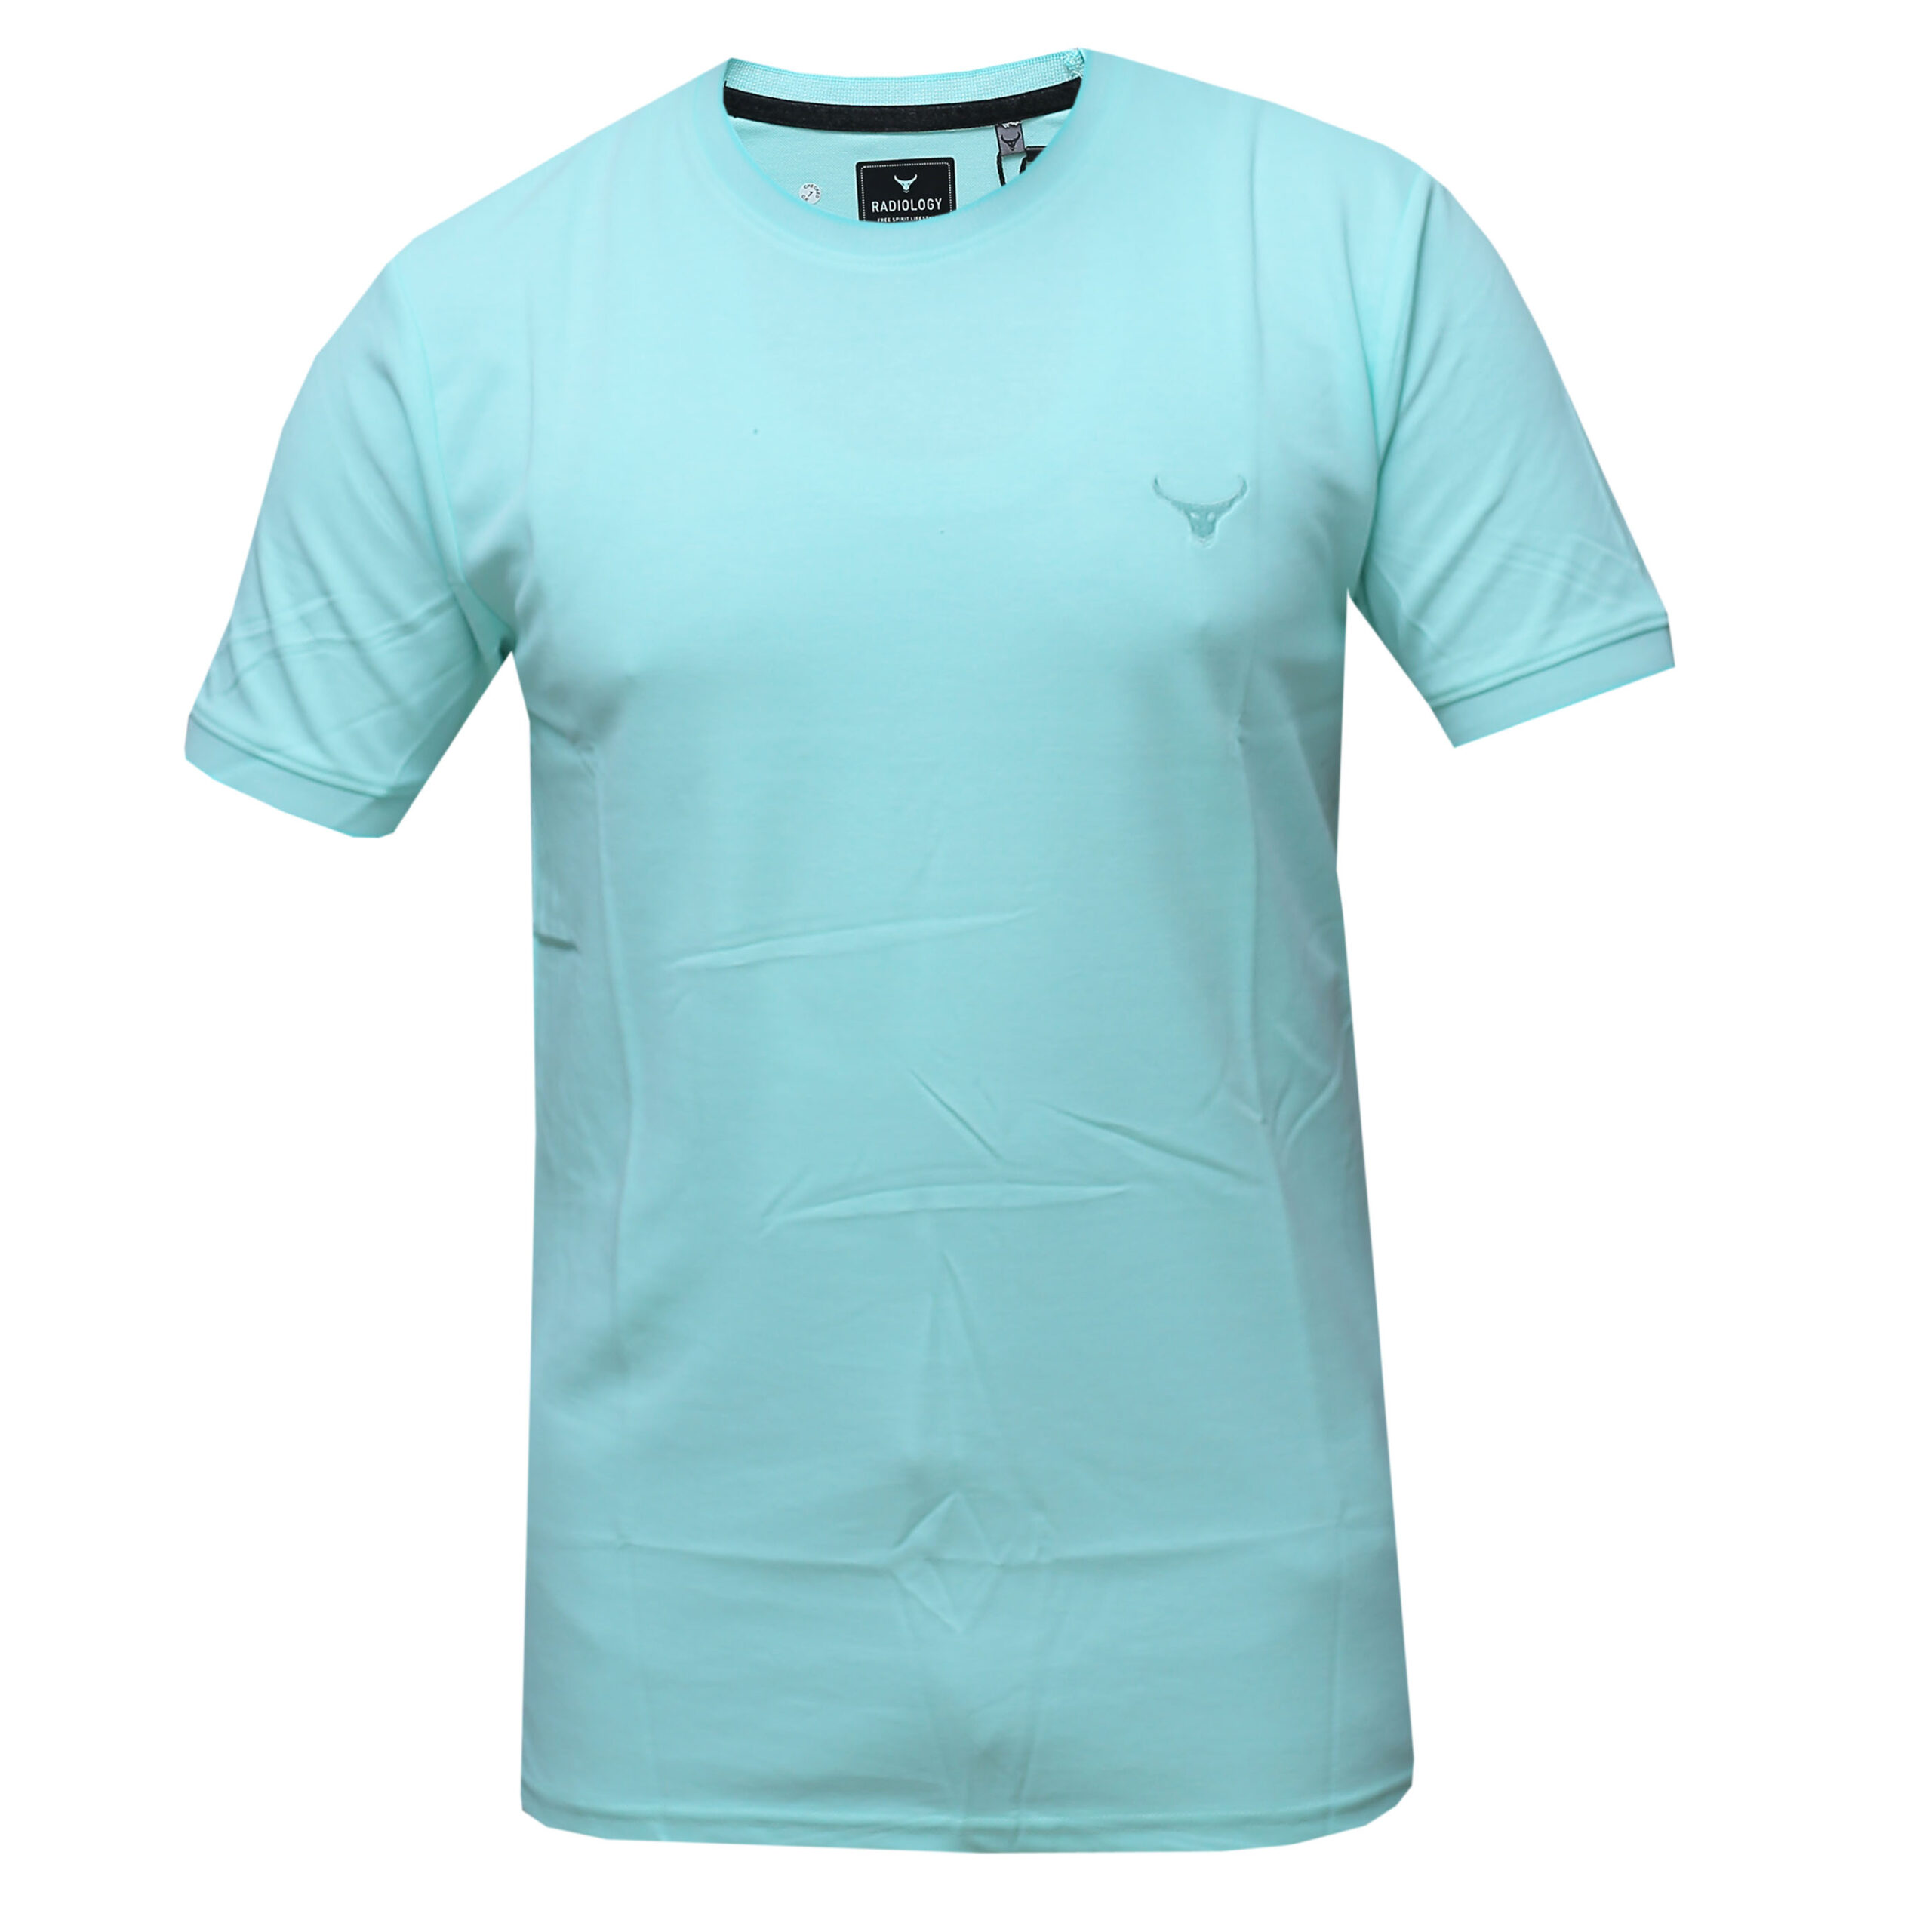 Plain T-Shirts for Men - Casual Wear T-Shirts